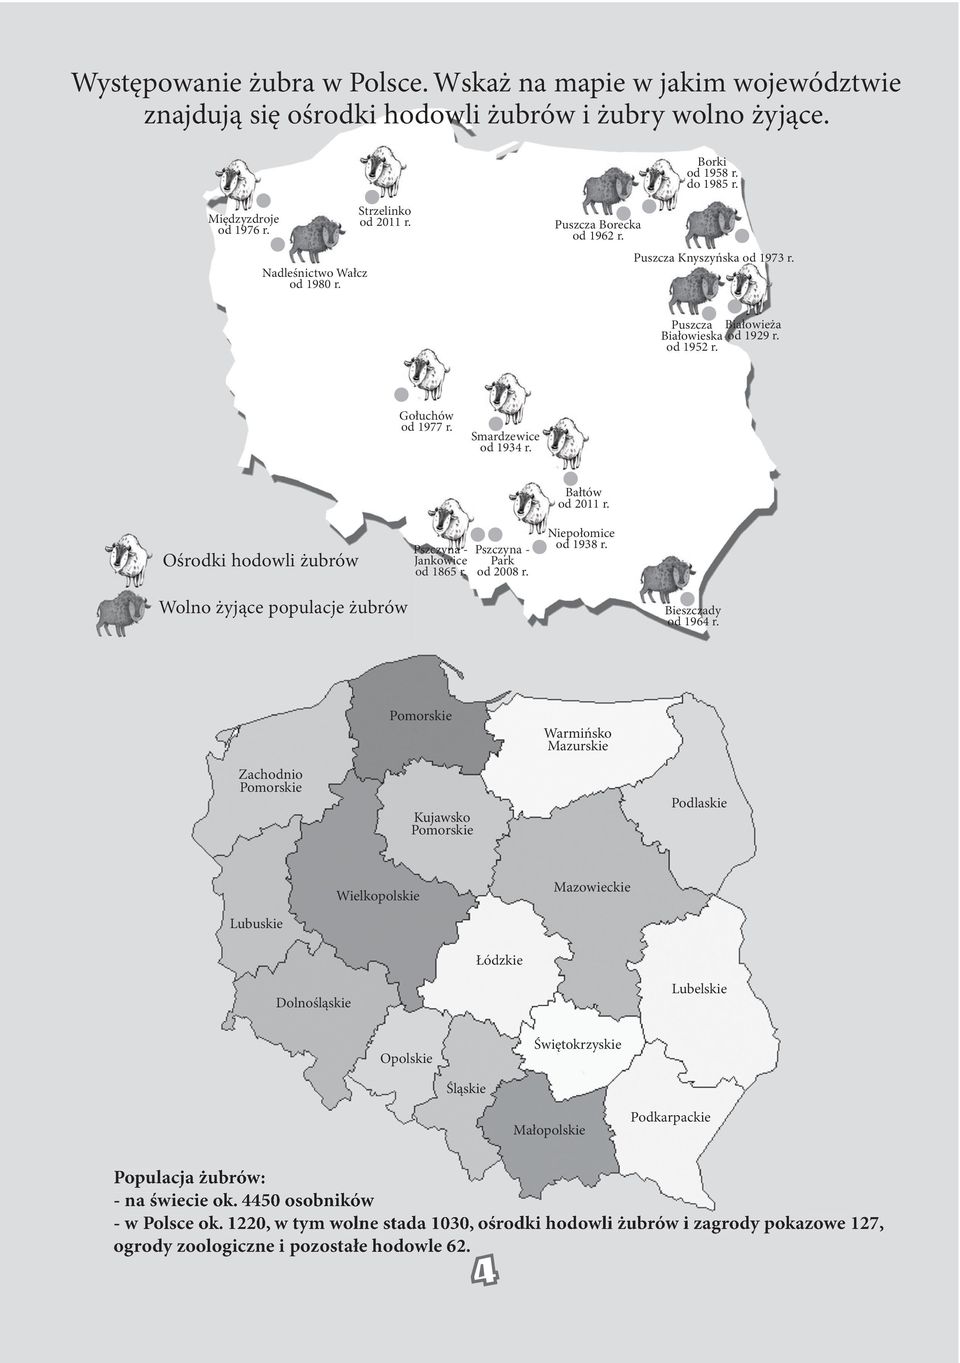 Smardzewice od 1934 r. środki hodowli żubrów Pszczyna - Jankowice od 1865 r. Pszczyna - Park od 2008 r. Bałtów od 2011 r. iepołomice od 1938 r. Wolno żyjące populacje żubrów Bieszczady od 1964 r.